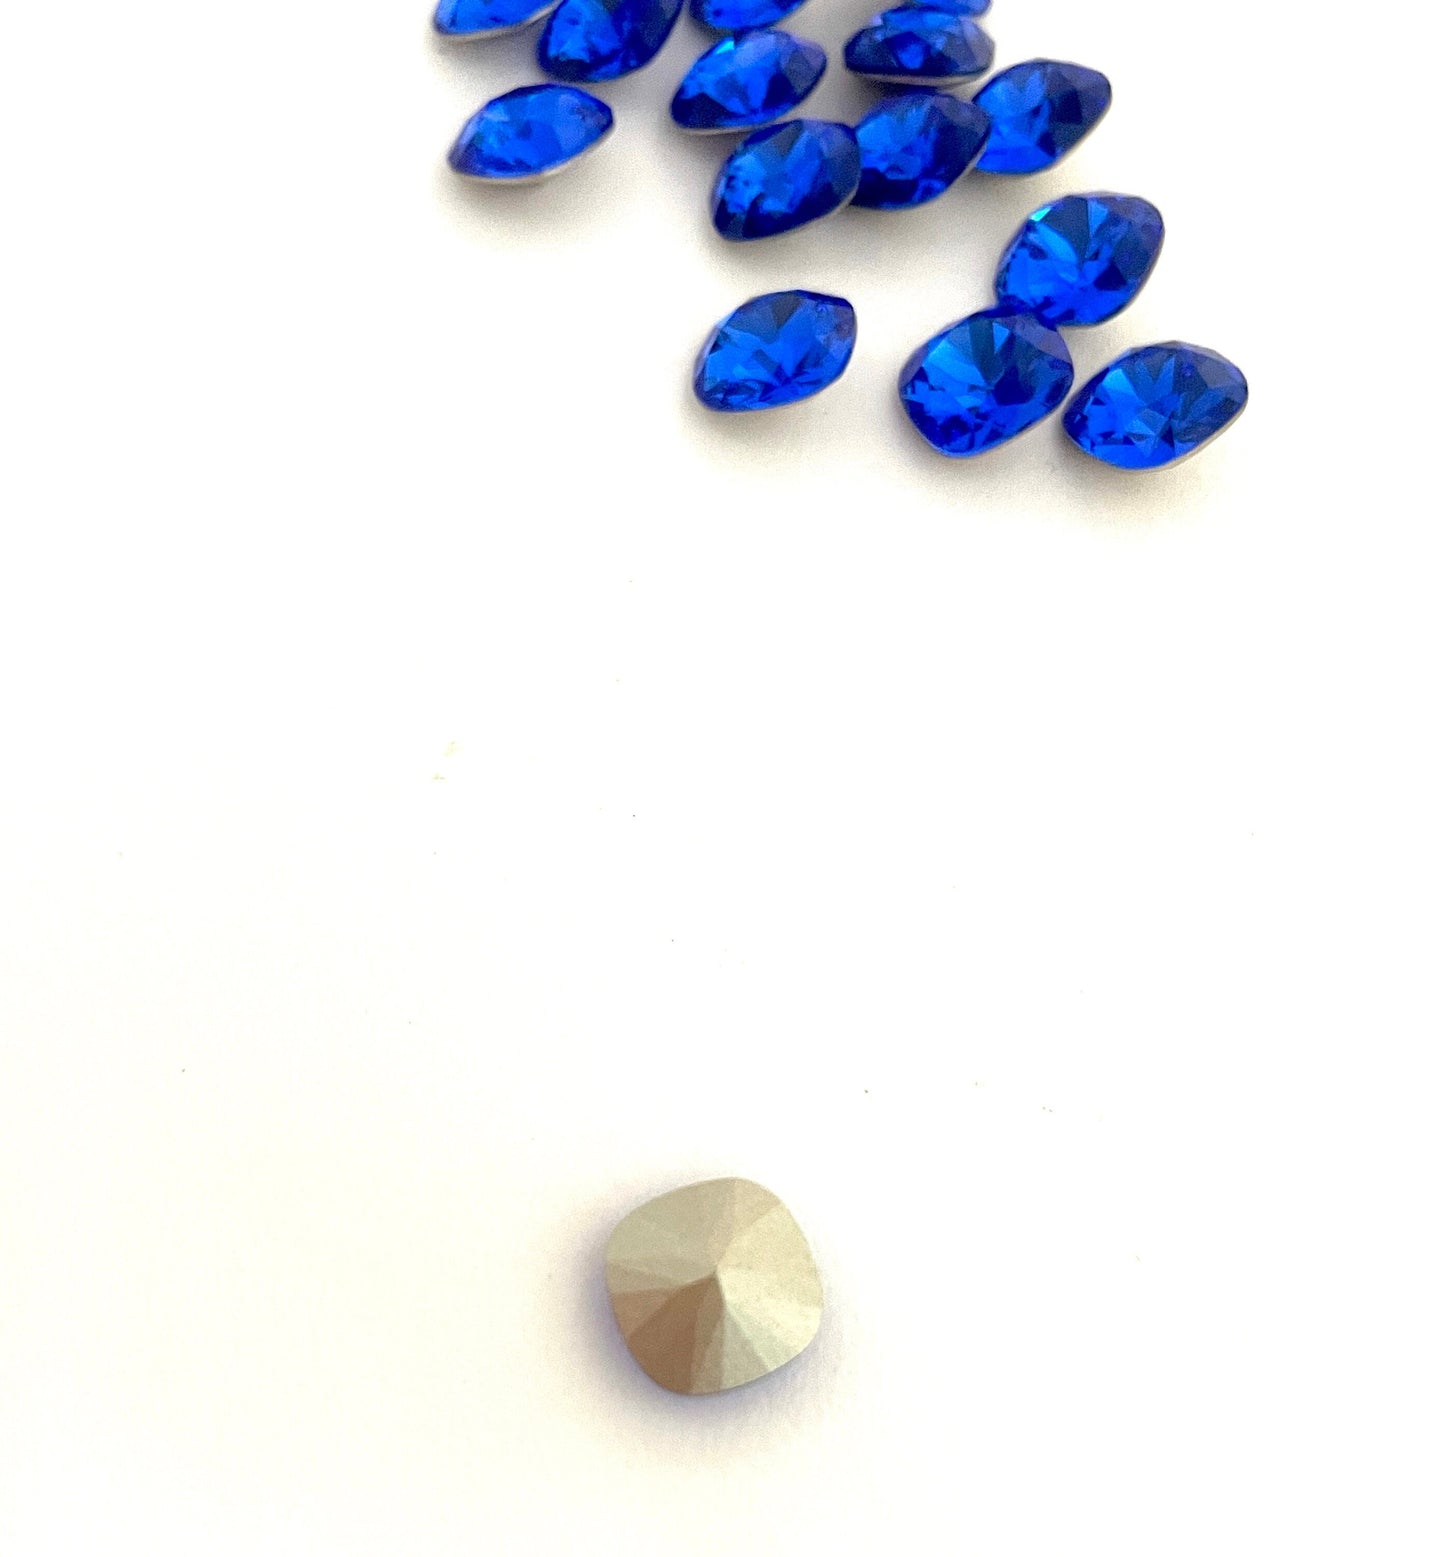 10 pieces 10mm Royal Blue Fancy Swarovski Crystal 4470